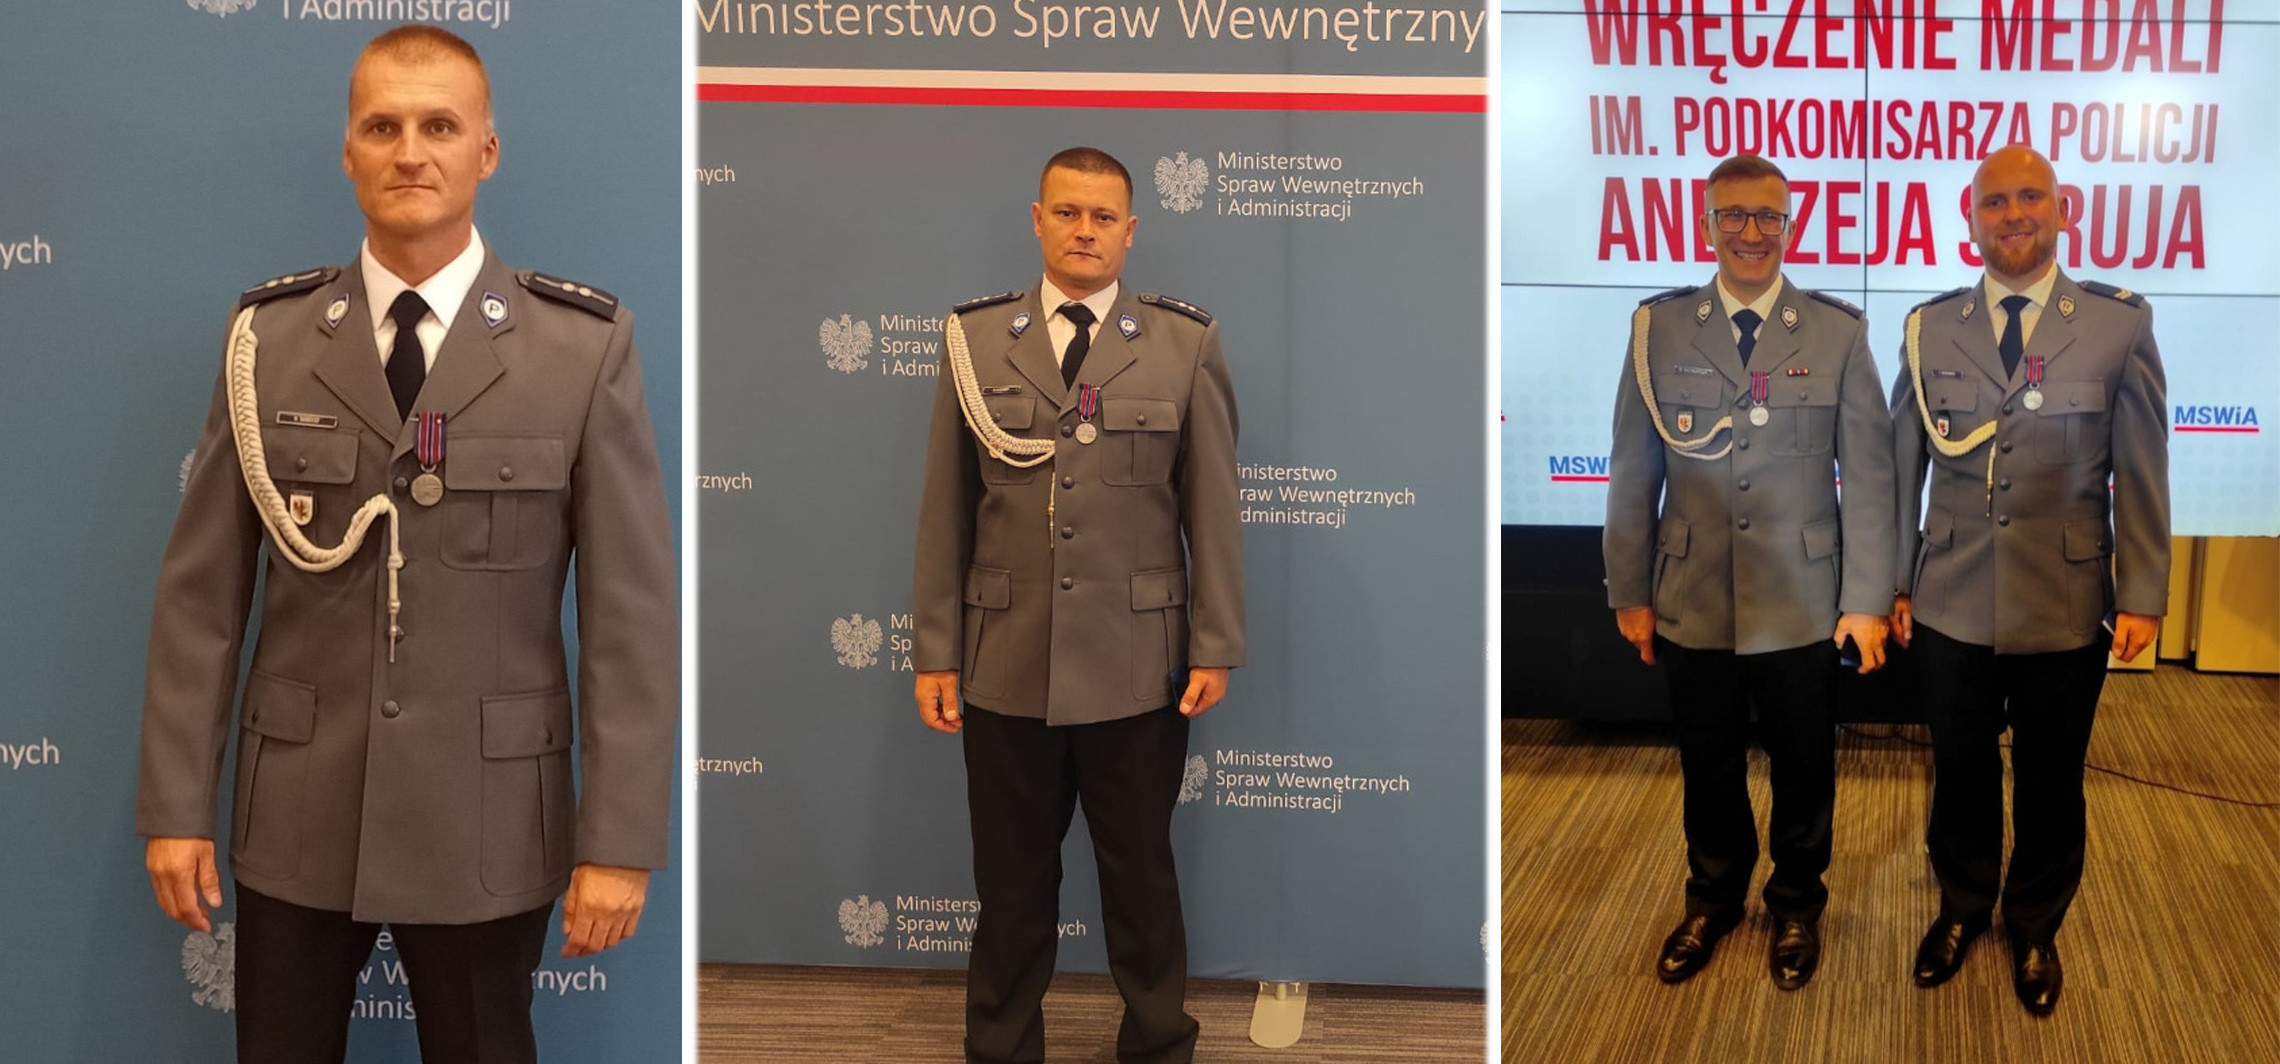 Inowrocław - Nasi policjanci odznaczeni medalami. Za ratowanie życia